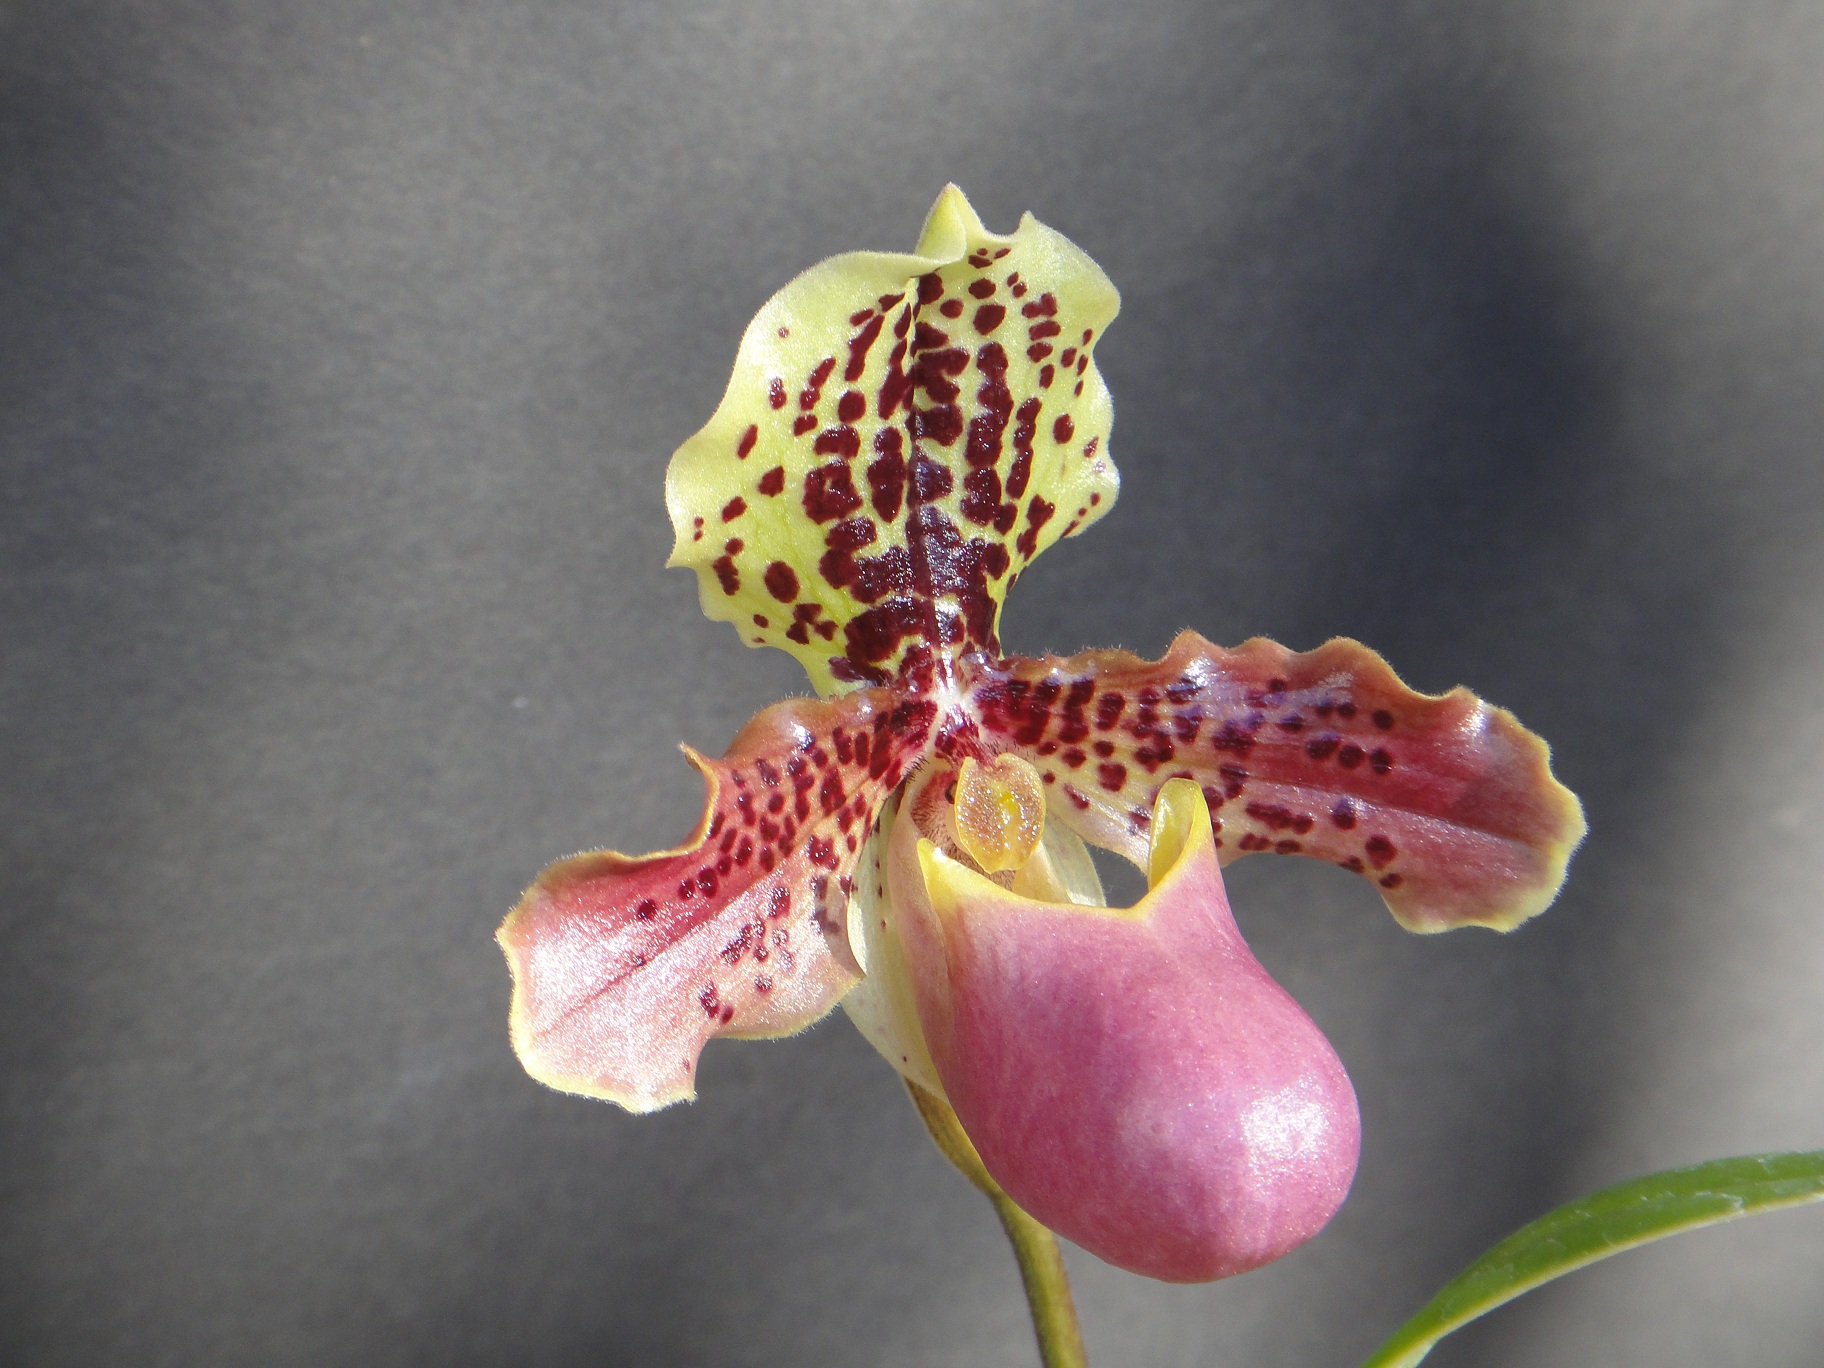 http://orchids.la.coocan.jp/Paphiopedilum/Paphiopedilum%20henryanum/DSC04369.JPG